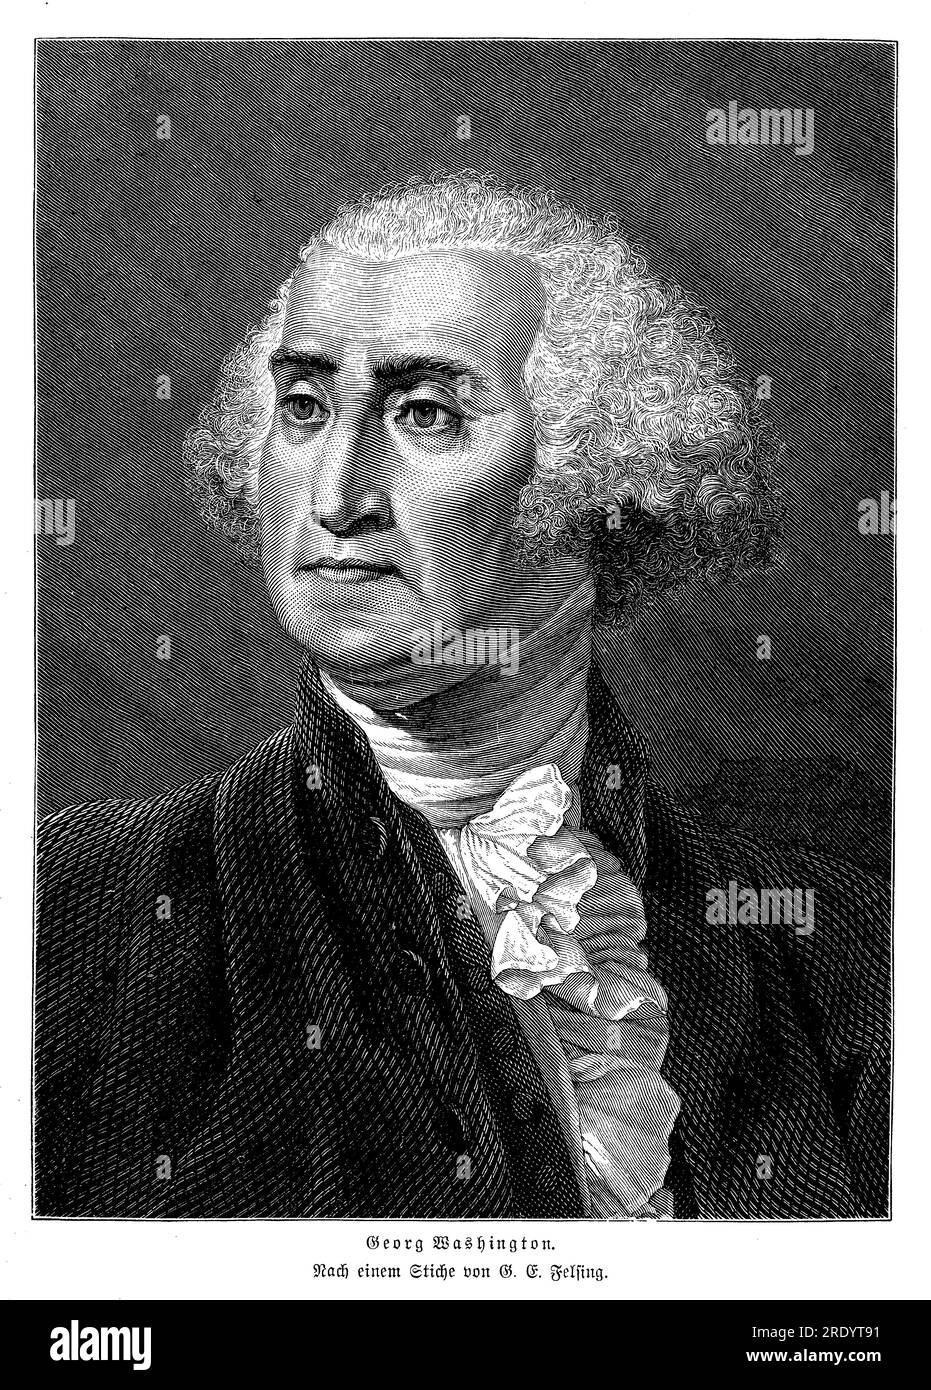 George Washington (1732-1799) war ein amerikanischer Militärführer, Staatsmann und erster Präsident der Vereinigten Staaten (1789-1797). Er spielte eine Schlüsselrolle im Amerikanischen Unabhängigkeitskrieg, befehligte die Kontinentalarmee und führte die Kolonien zum Sieg gegen die britischen Streitkräfte. Stockfoto